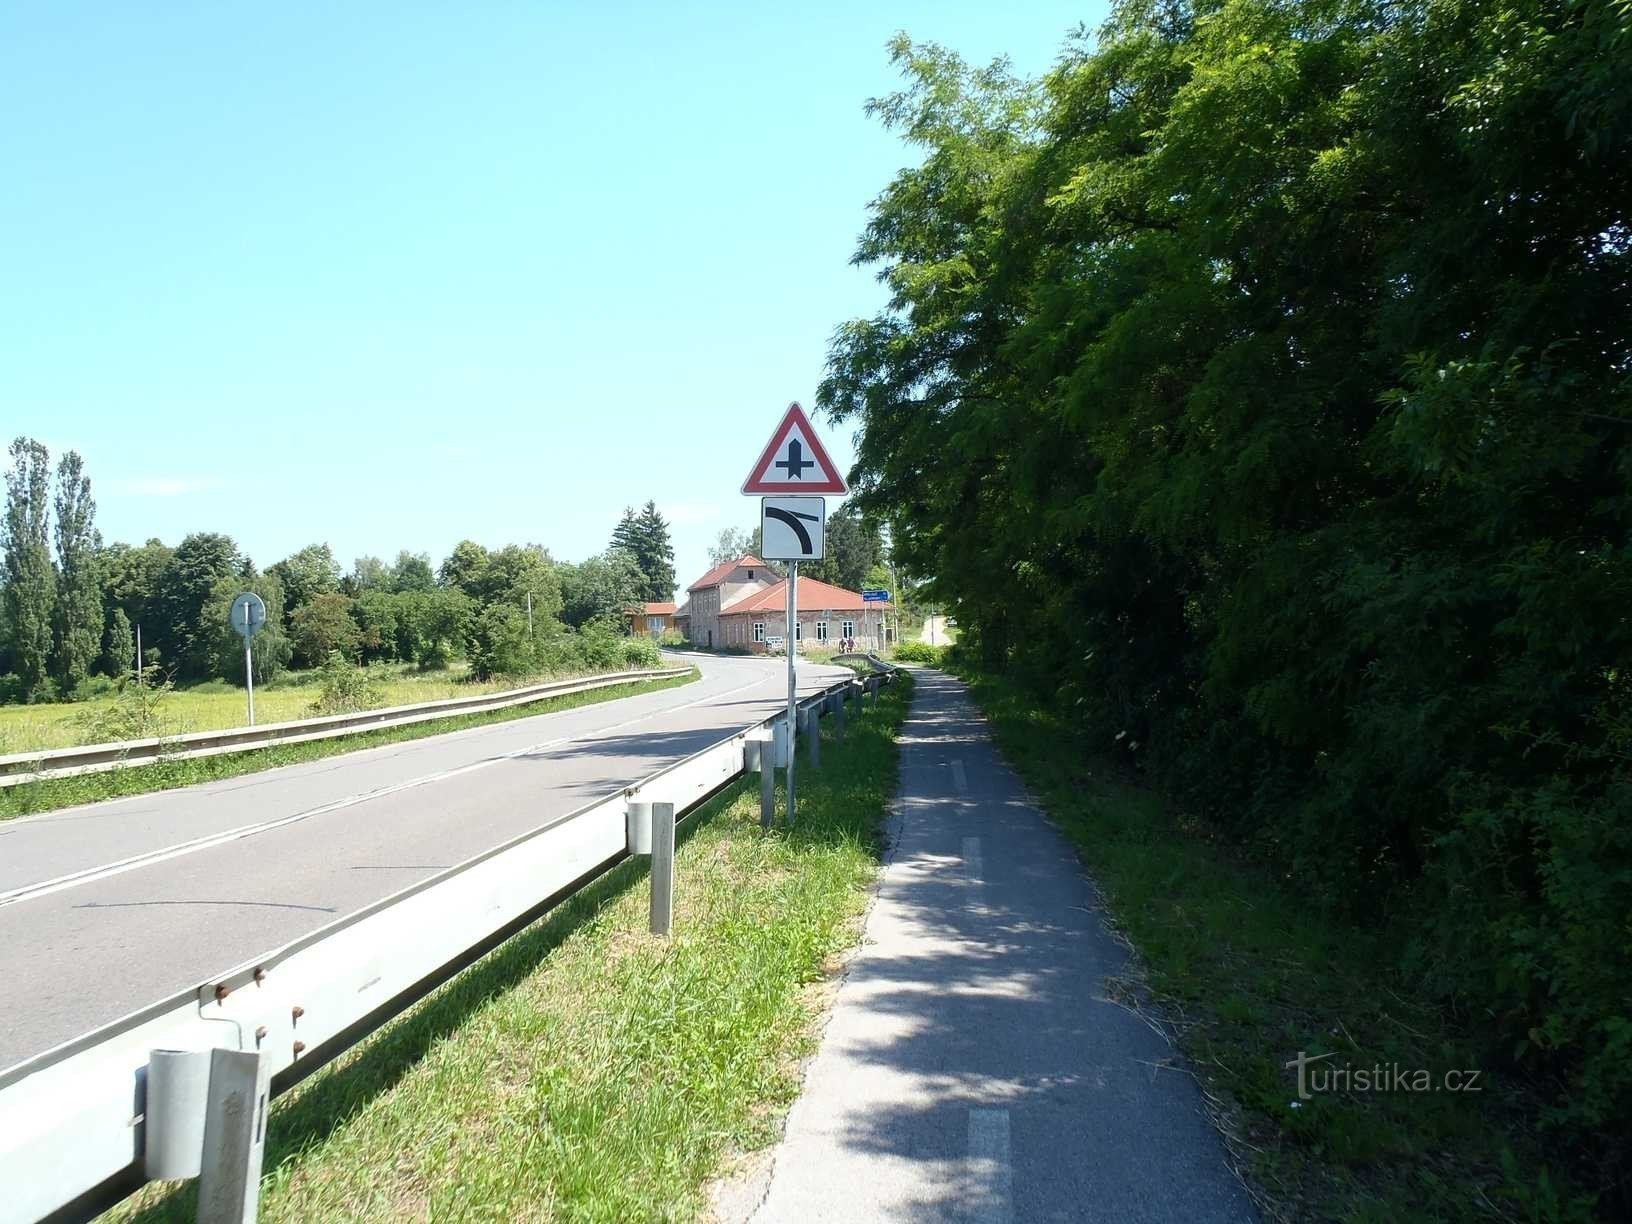 Kerékpárút Chlumec nad Cidlina és Skalka között - 16.6.2012